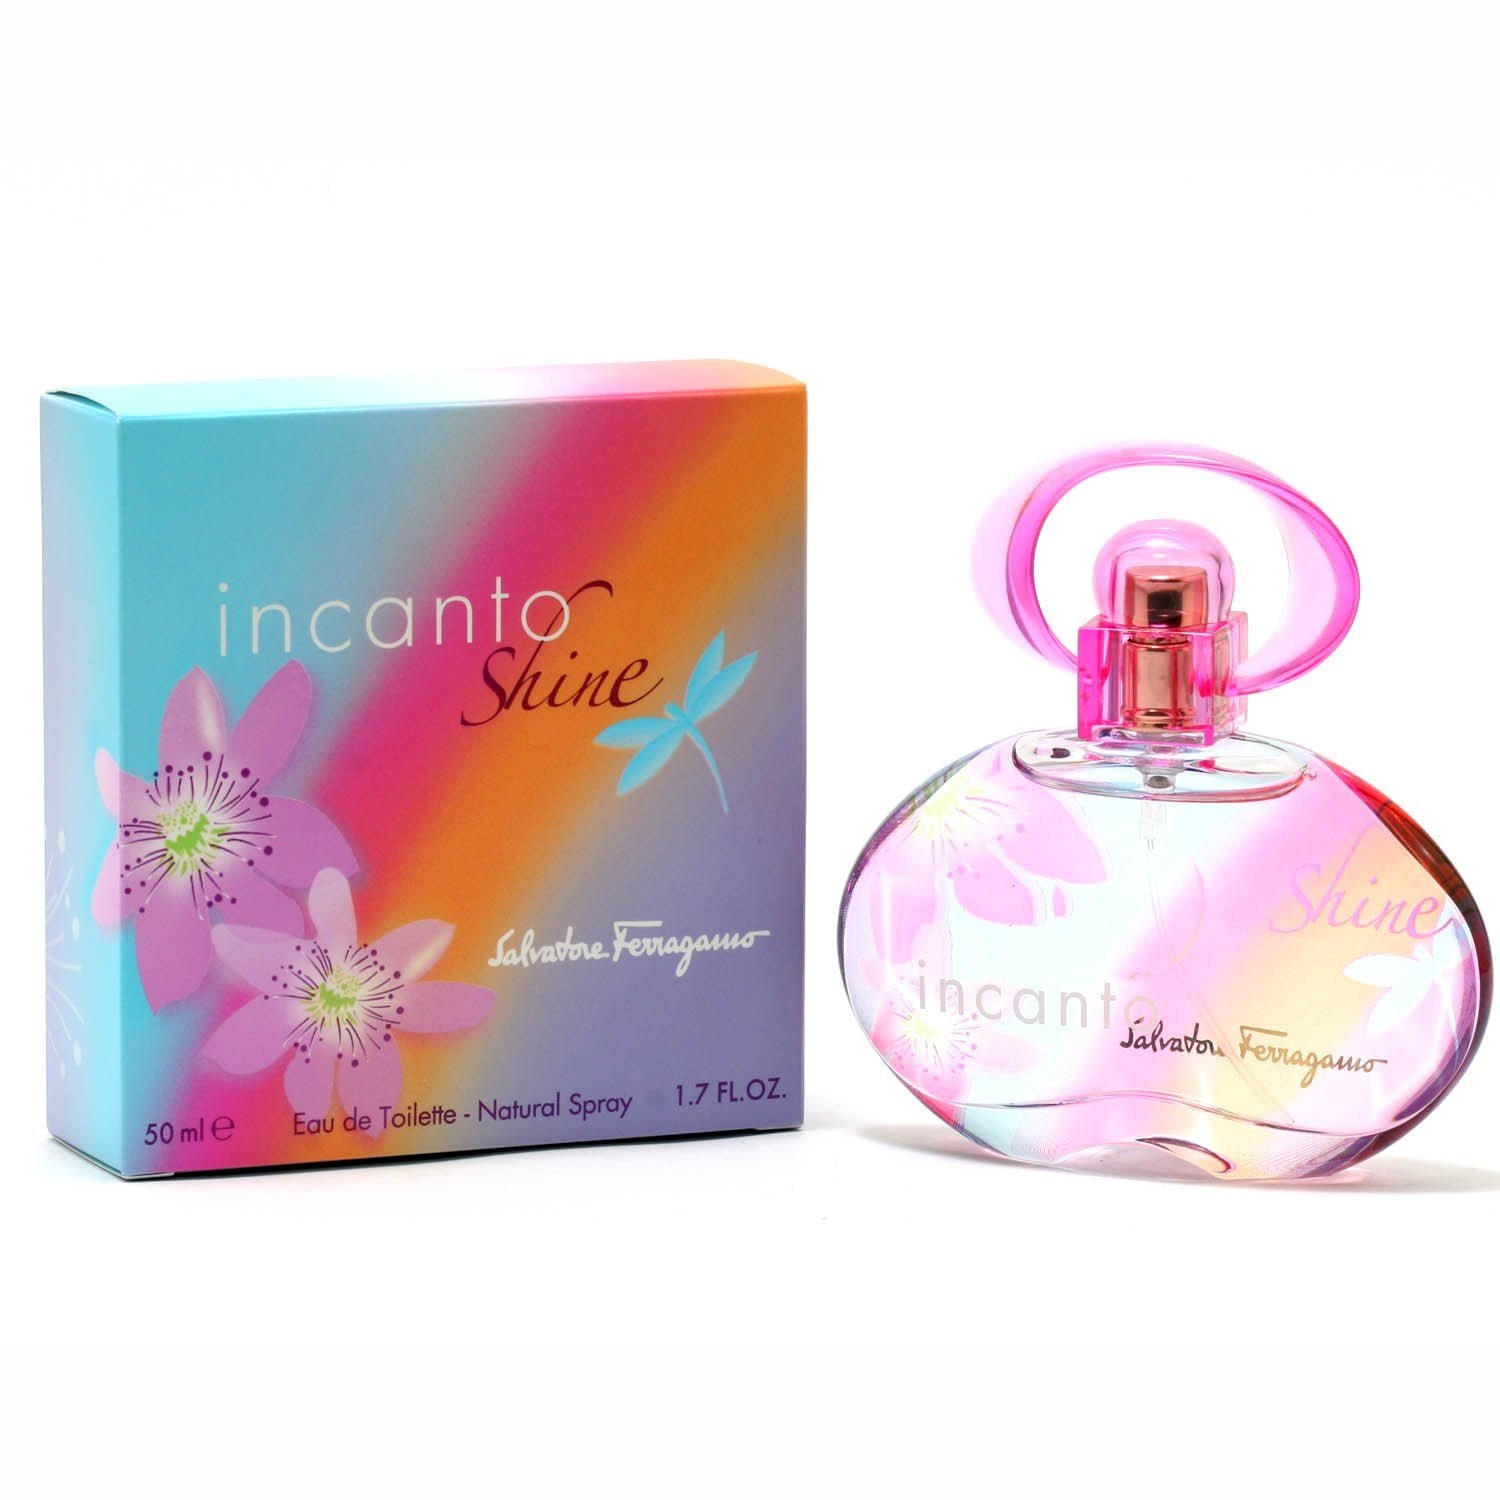 Perfume - INCANTO SHINE FOR WOMEN BY SALVATORE FERRAGAMO - EAU DE TOILETTE SPRAY